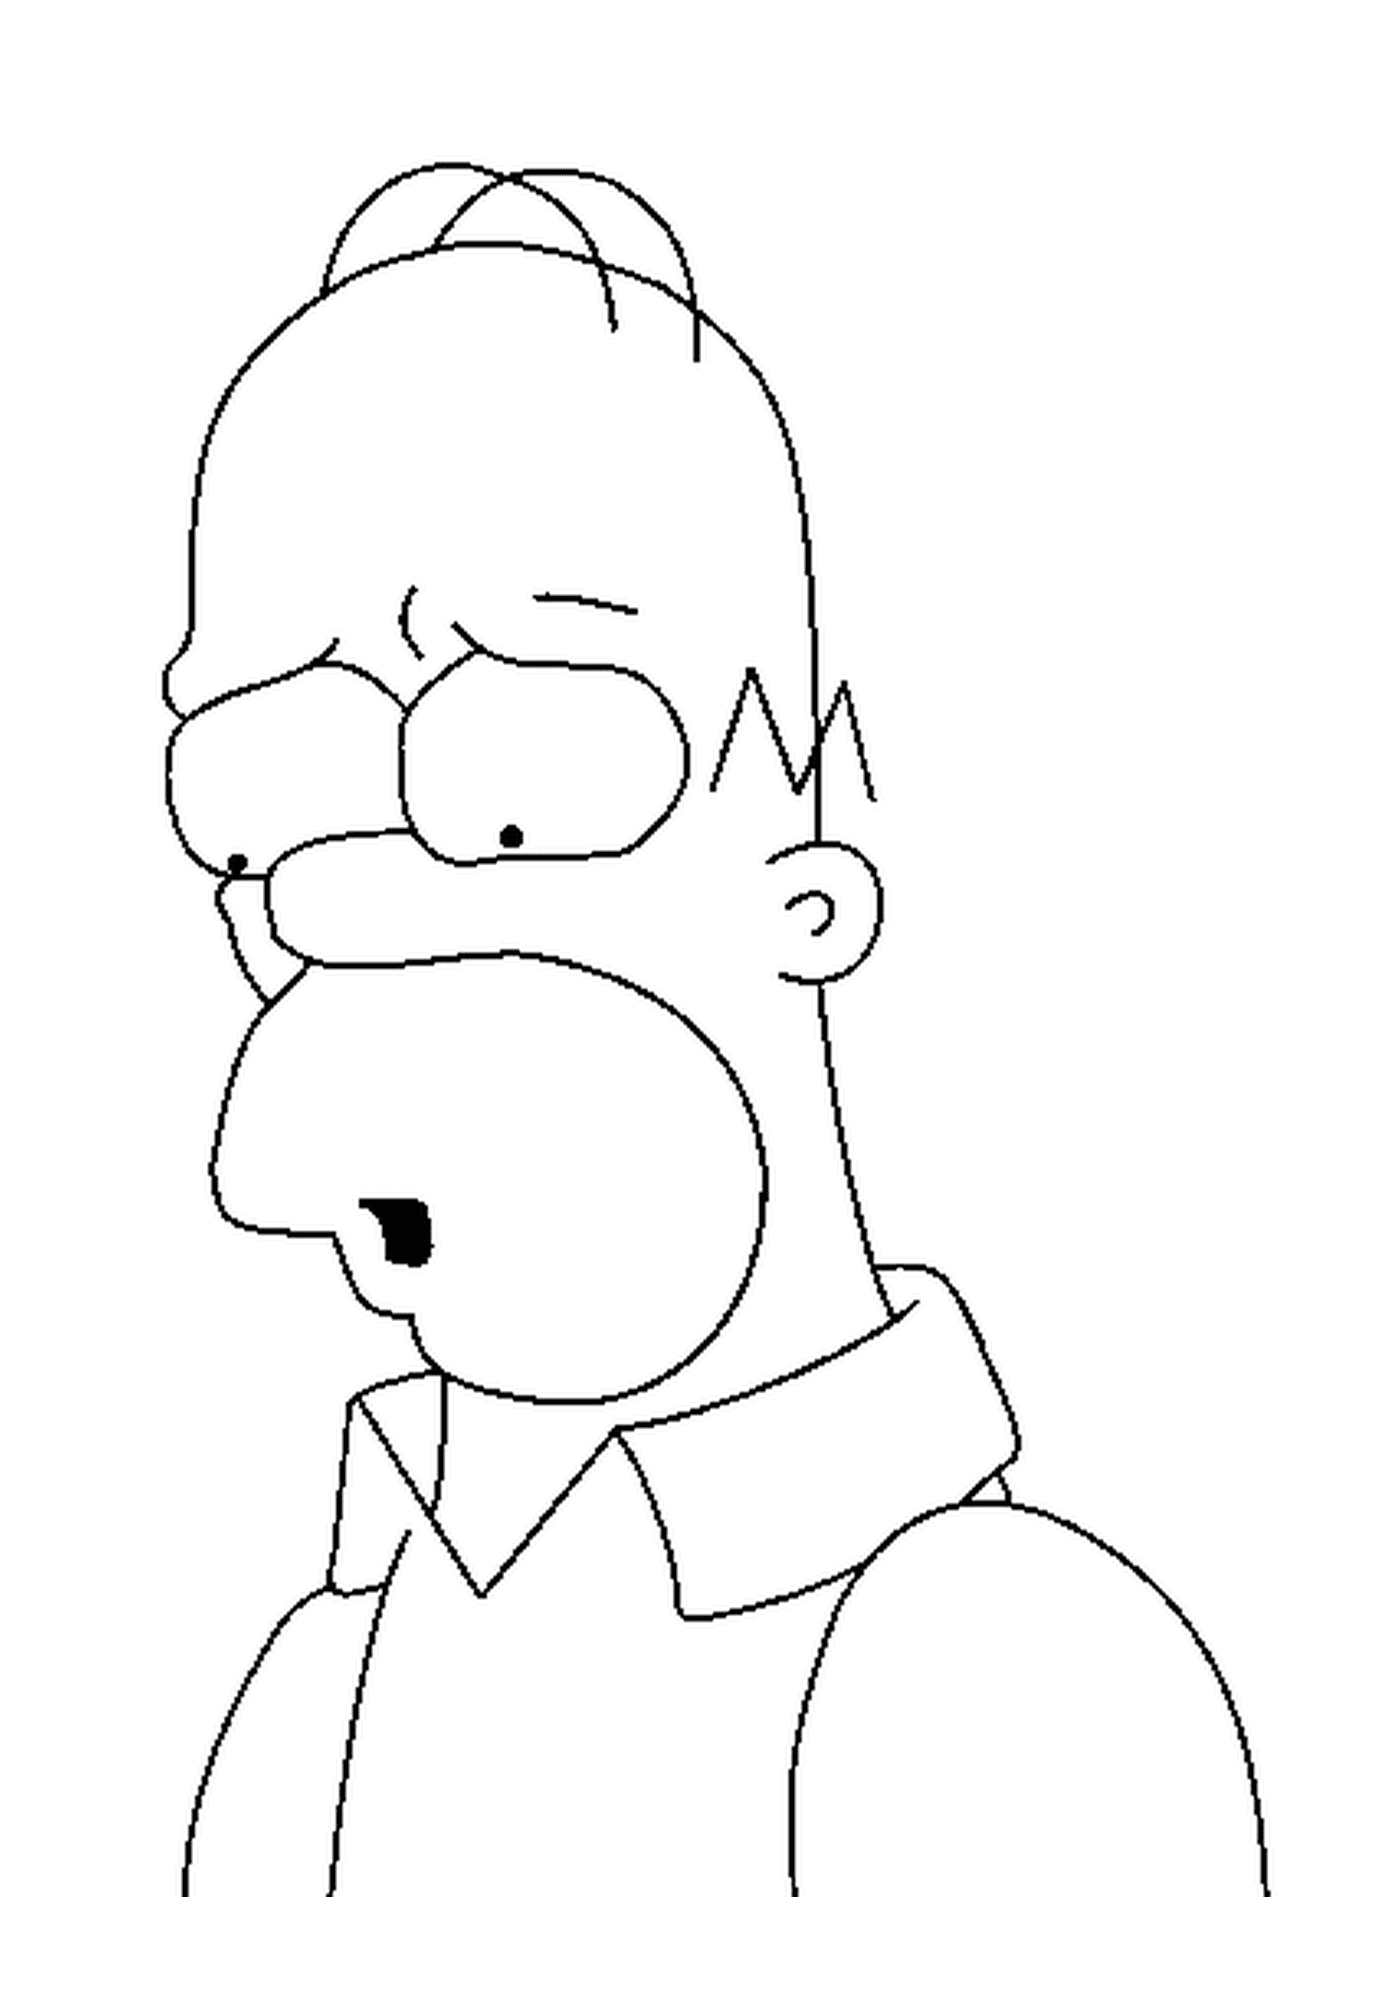  Homer Simpson, trauriges Gesicht 